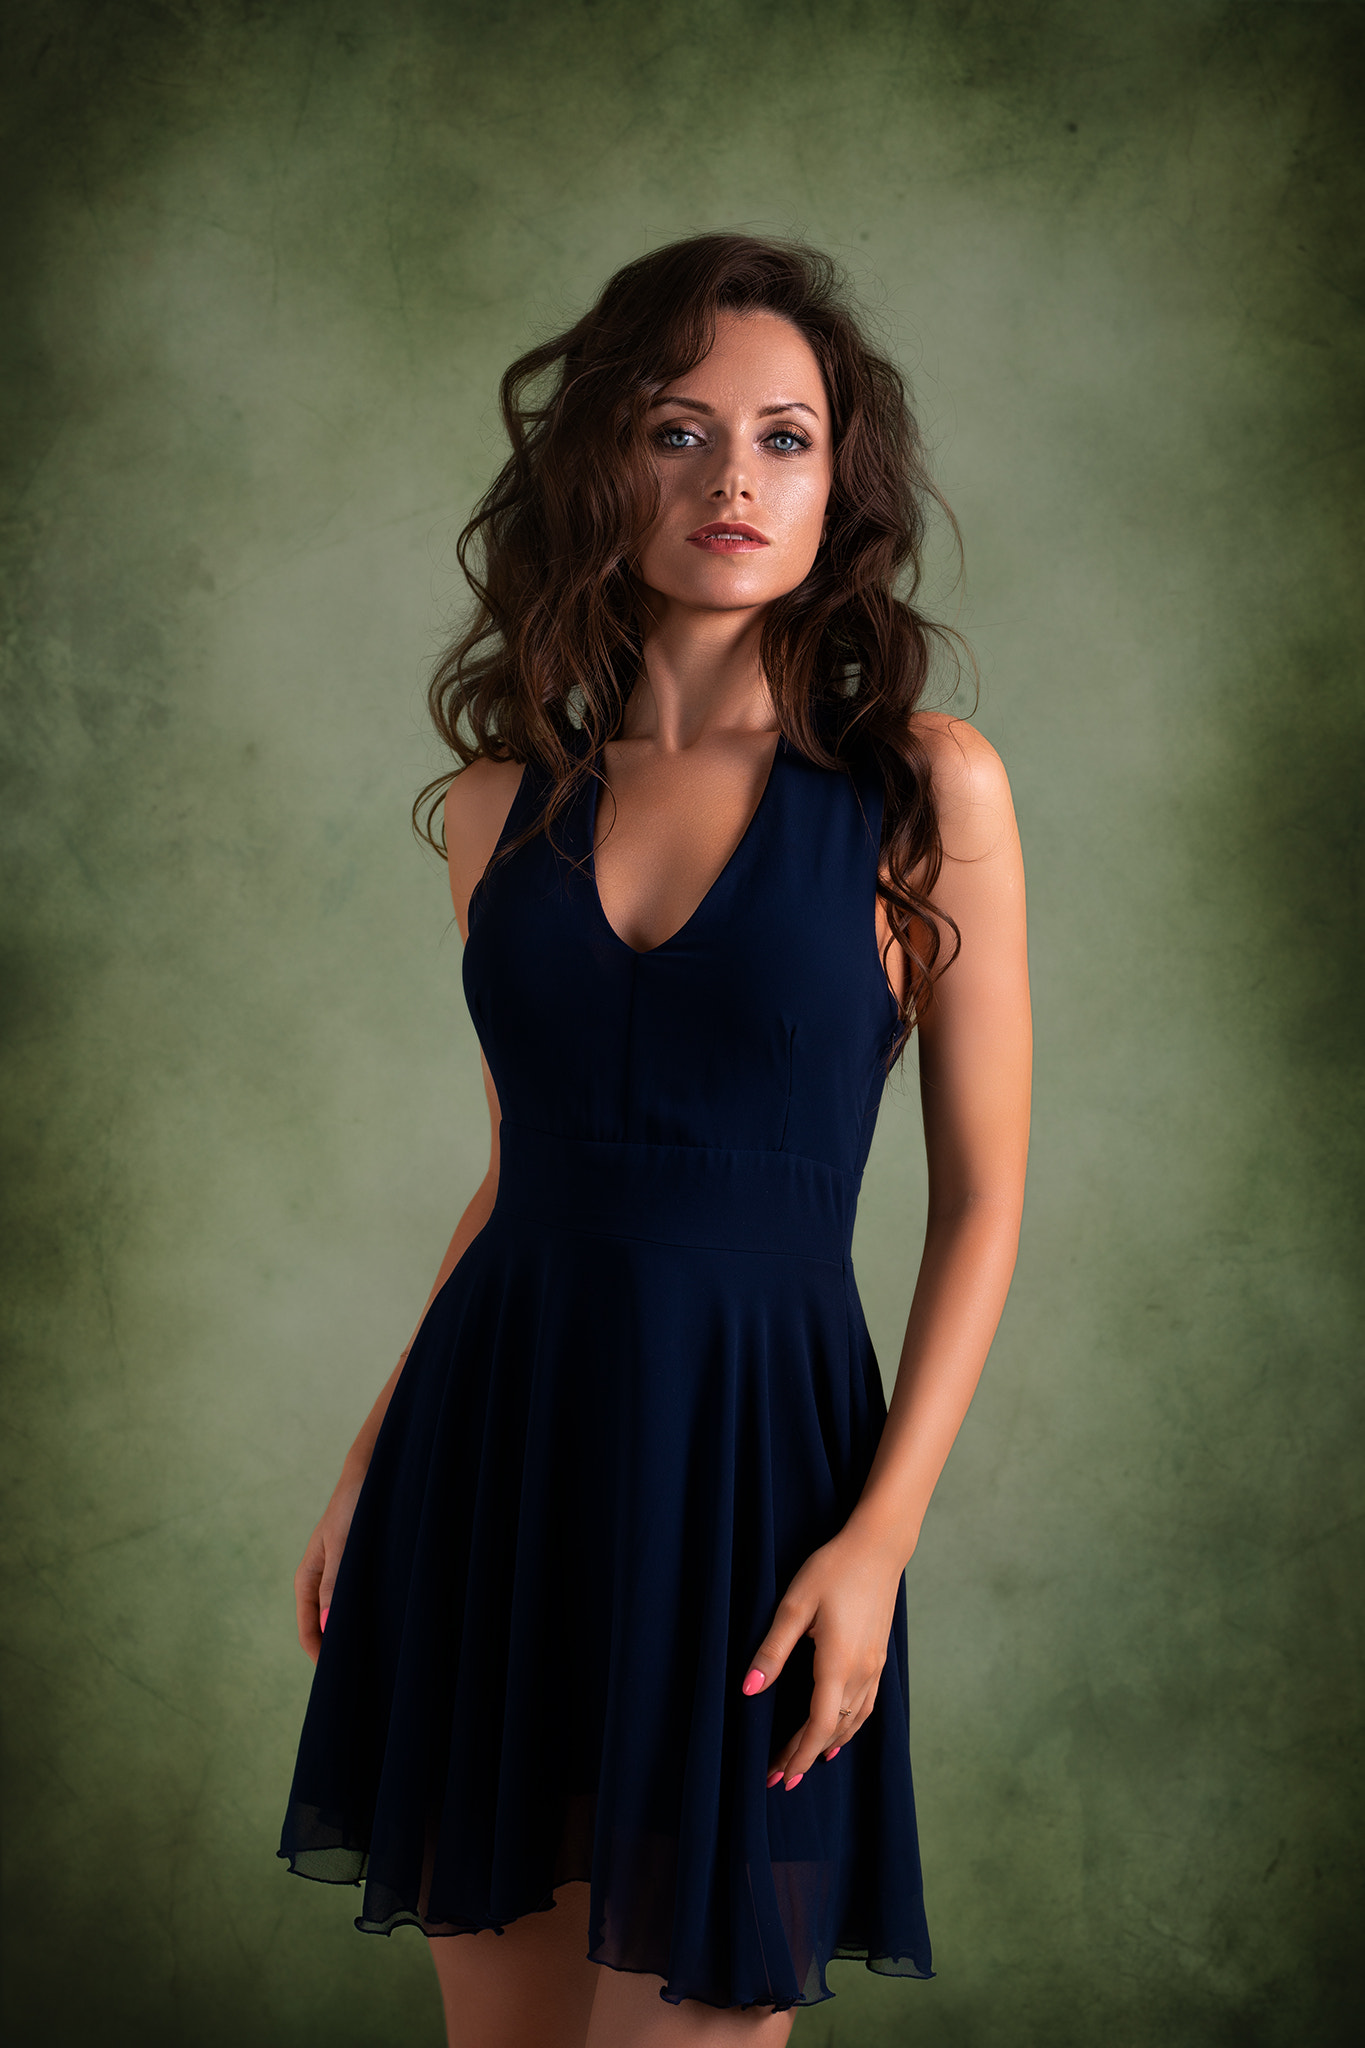 Dmitry Shulgin Women Brunette Long Hair Wavy Hair Dress Blue Clothing Simple Background Ekaterina Ko 1365x2048